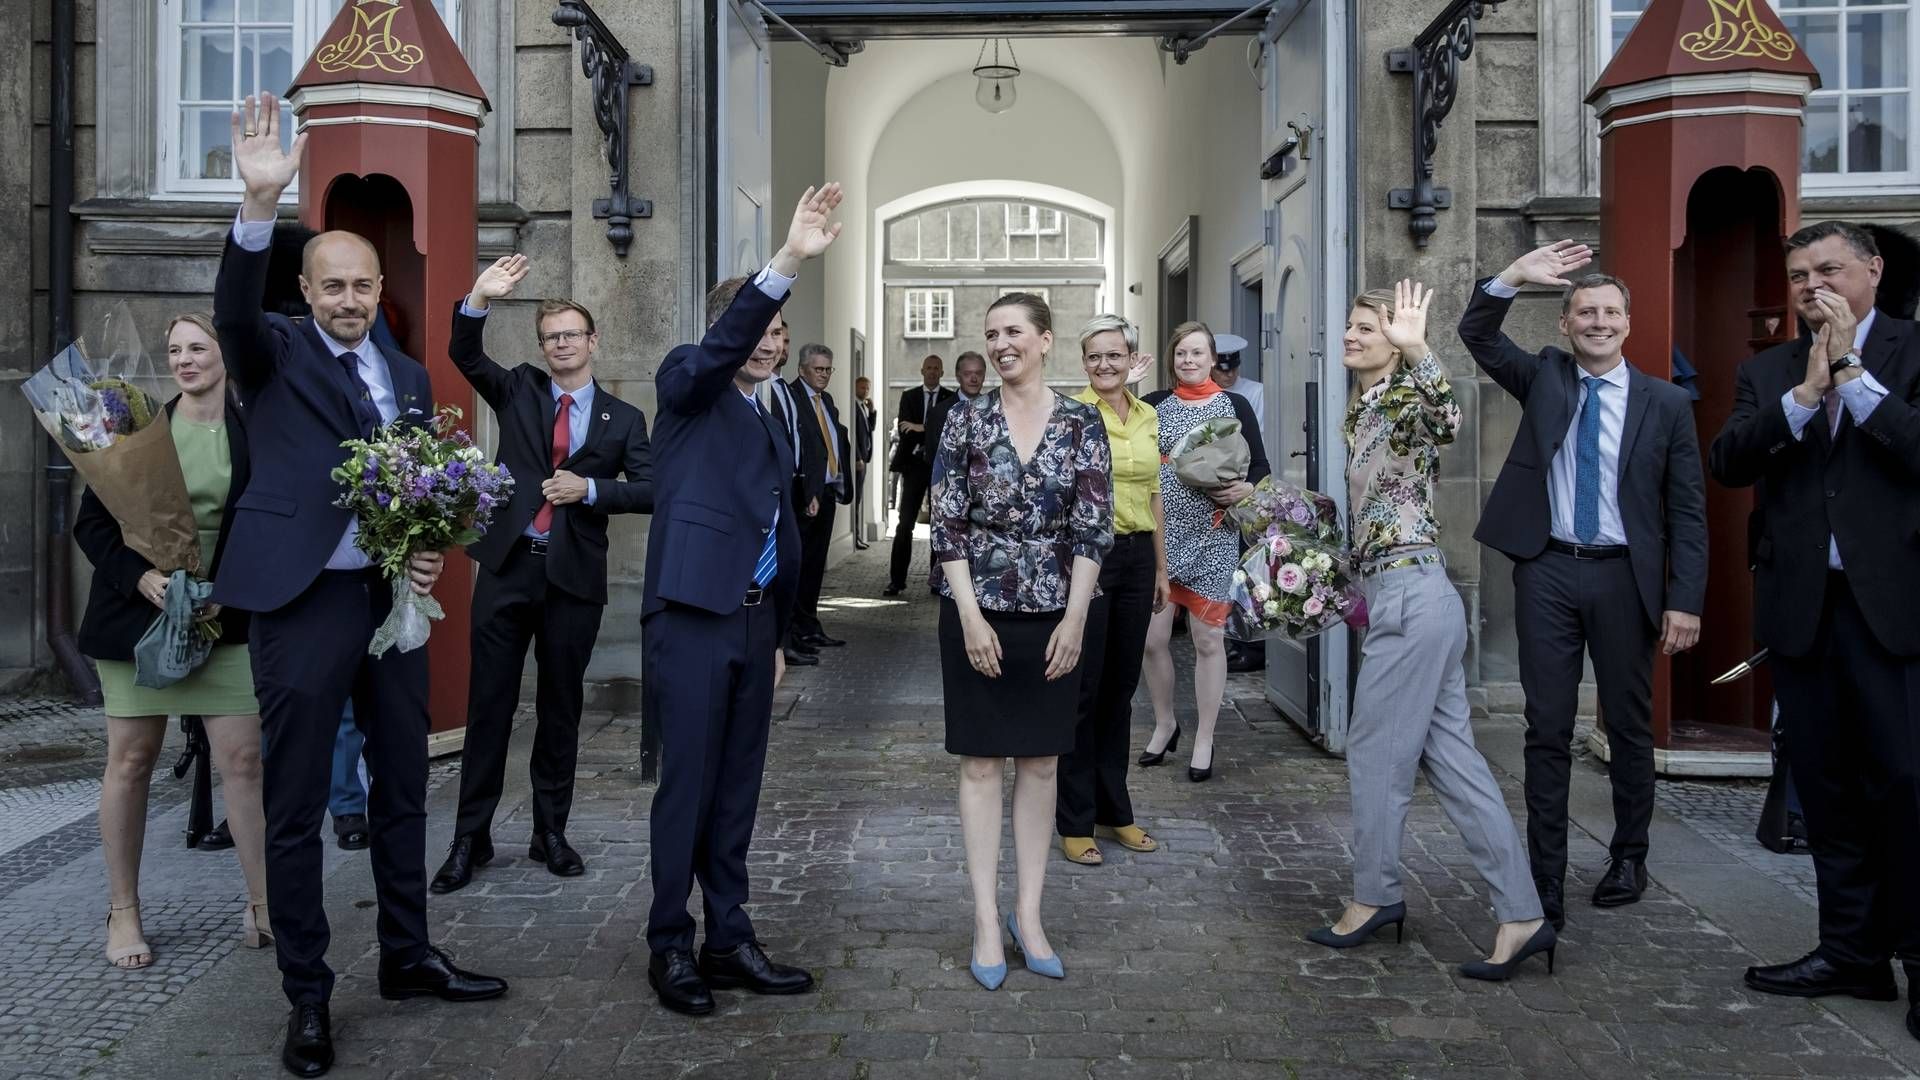 Statsminister Mette Frederiksen (S) præsenterer sin nye regering på Amalienborg Slotsplads 27. juni 2019. | Foto: Mads Nissen/RITZAU SCANPIX